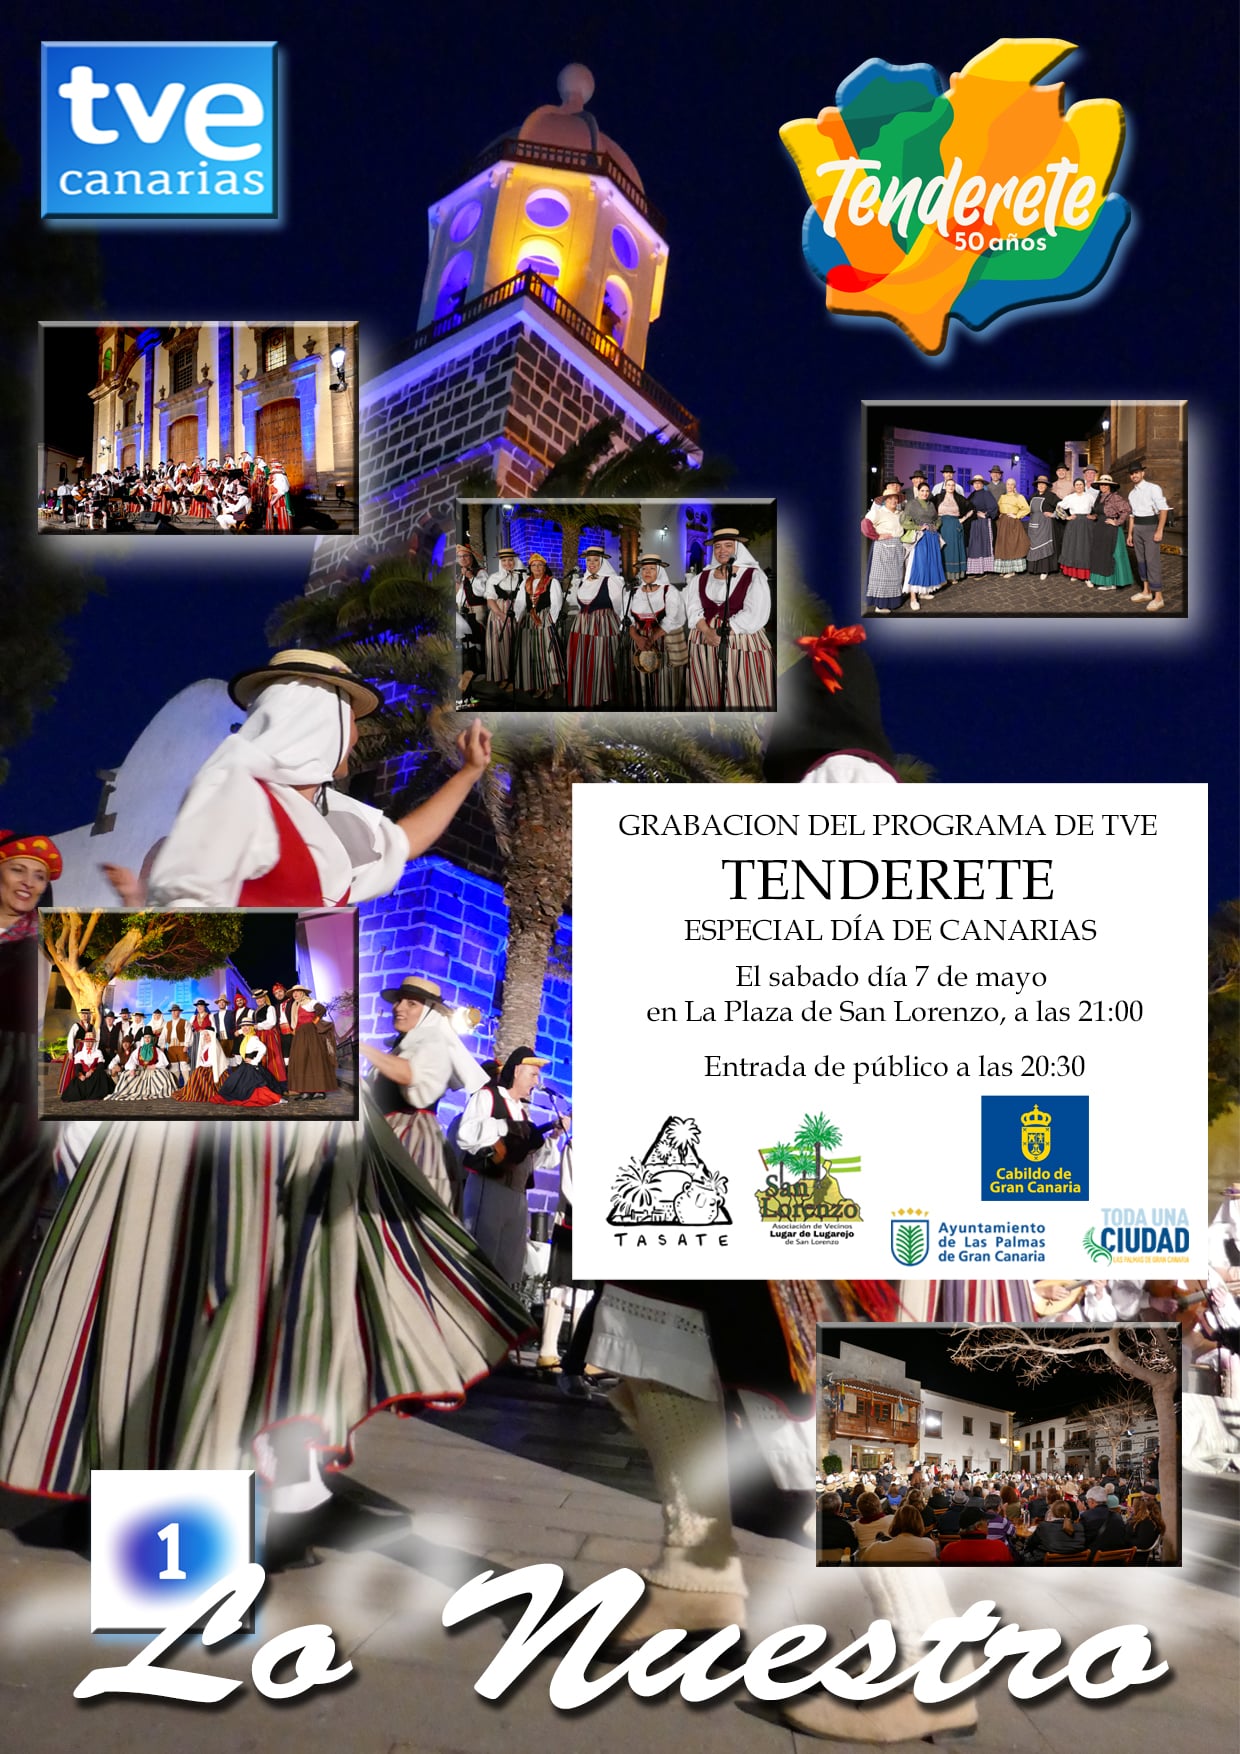 En este momento estás viendo El programa Tenderete se grabará el próximo sábado en el pueblo de San Lorenzo para celebrar el Día de Canarias